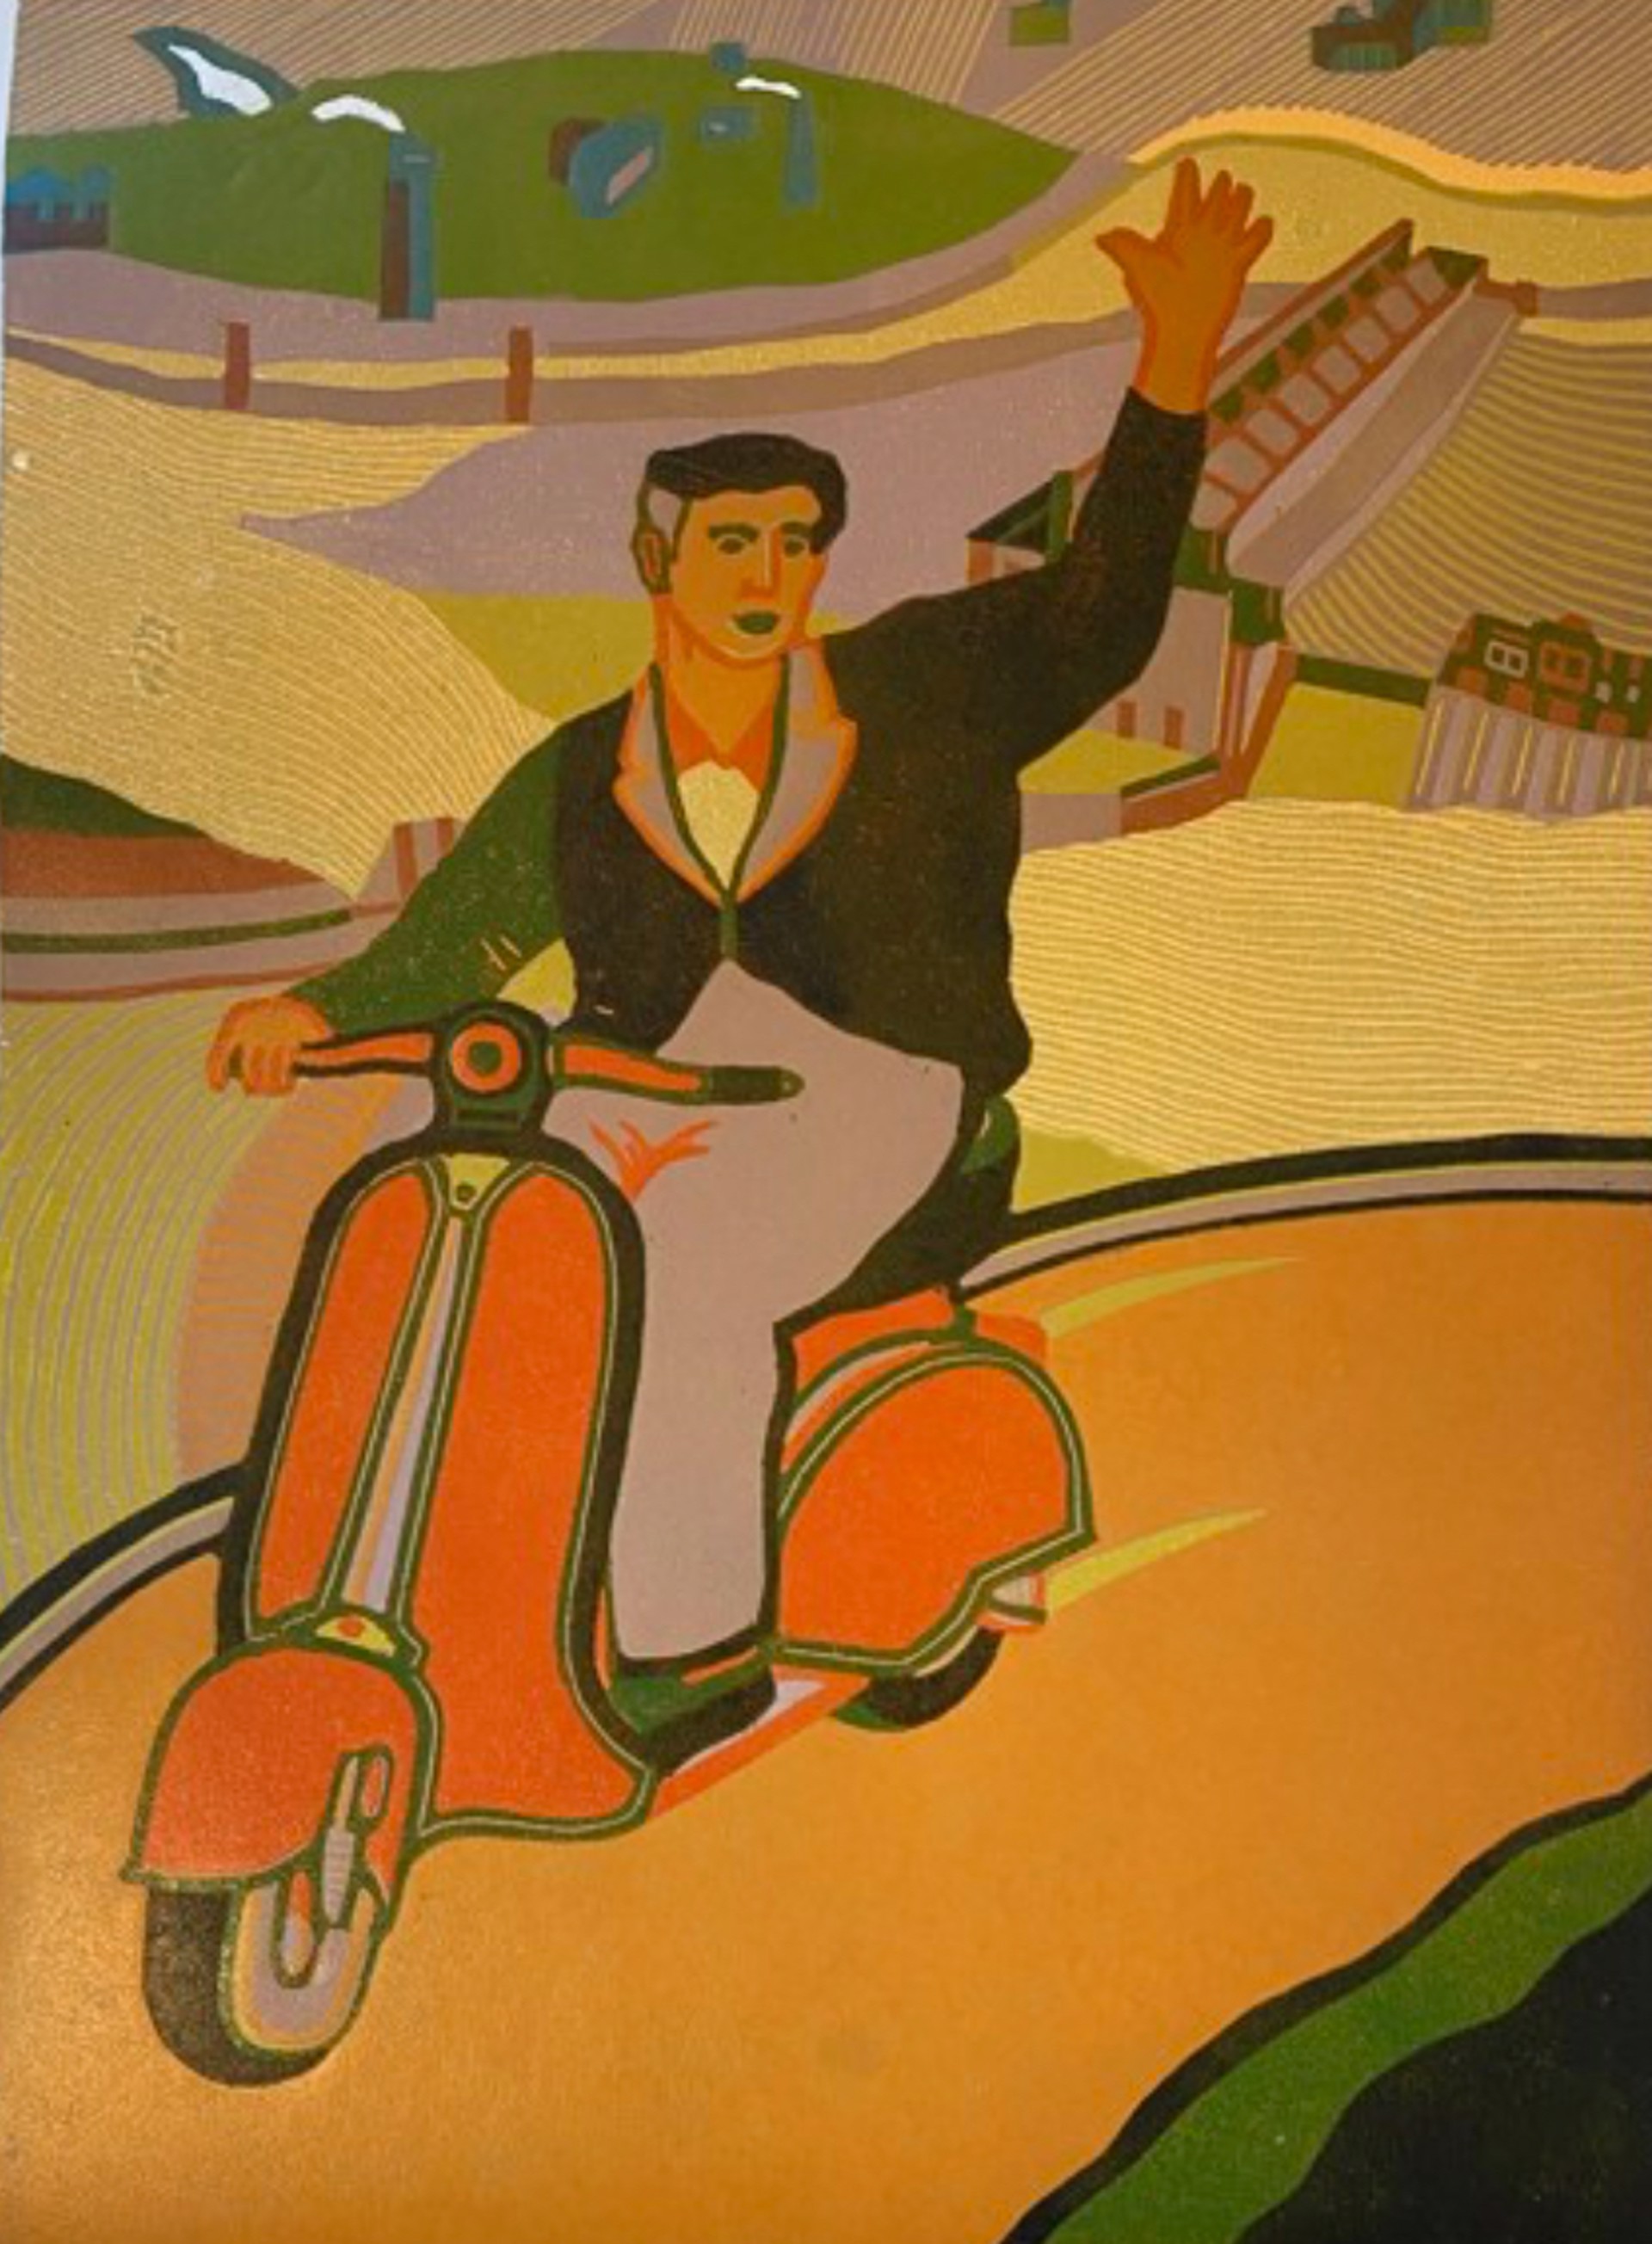 Scooter by Dairan Fernández de la Fuente